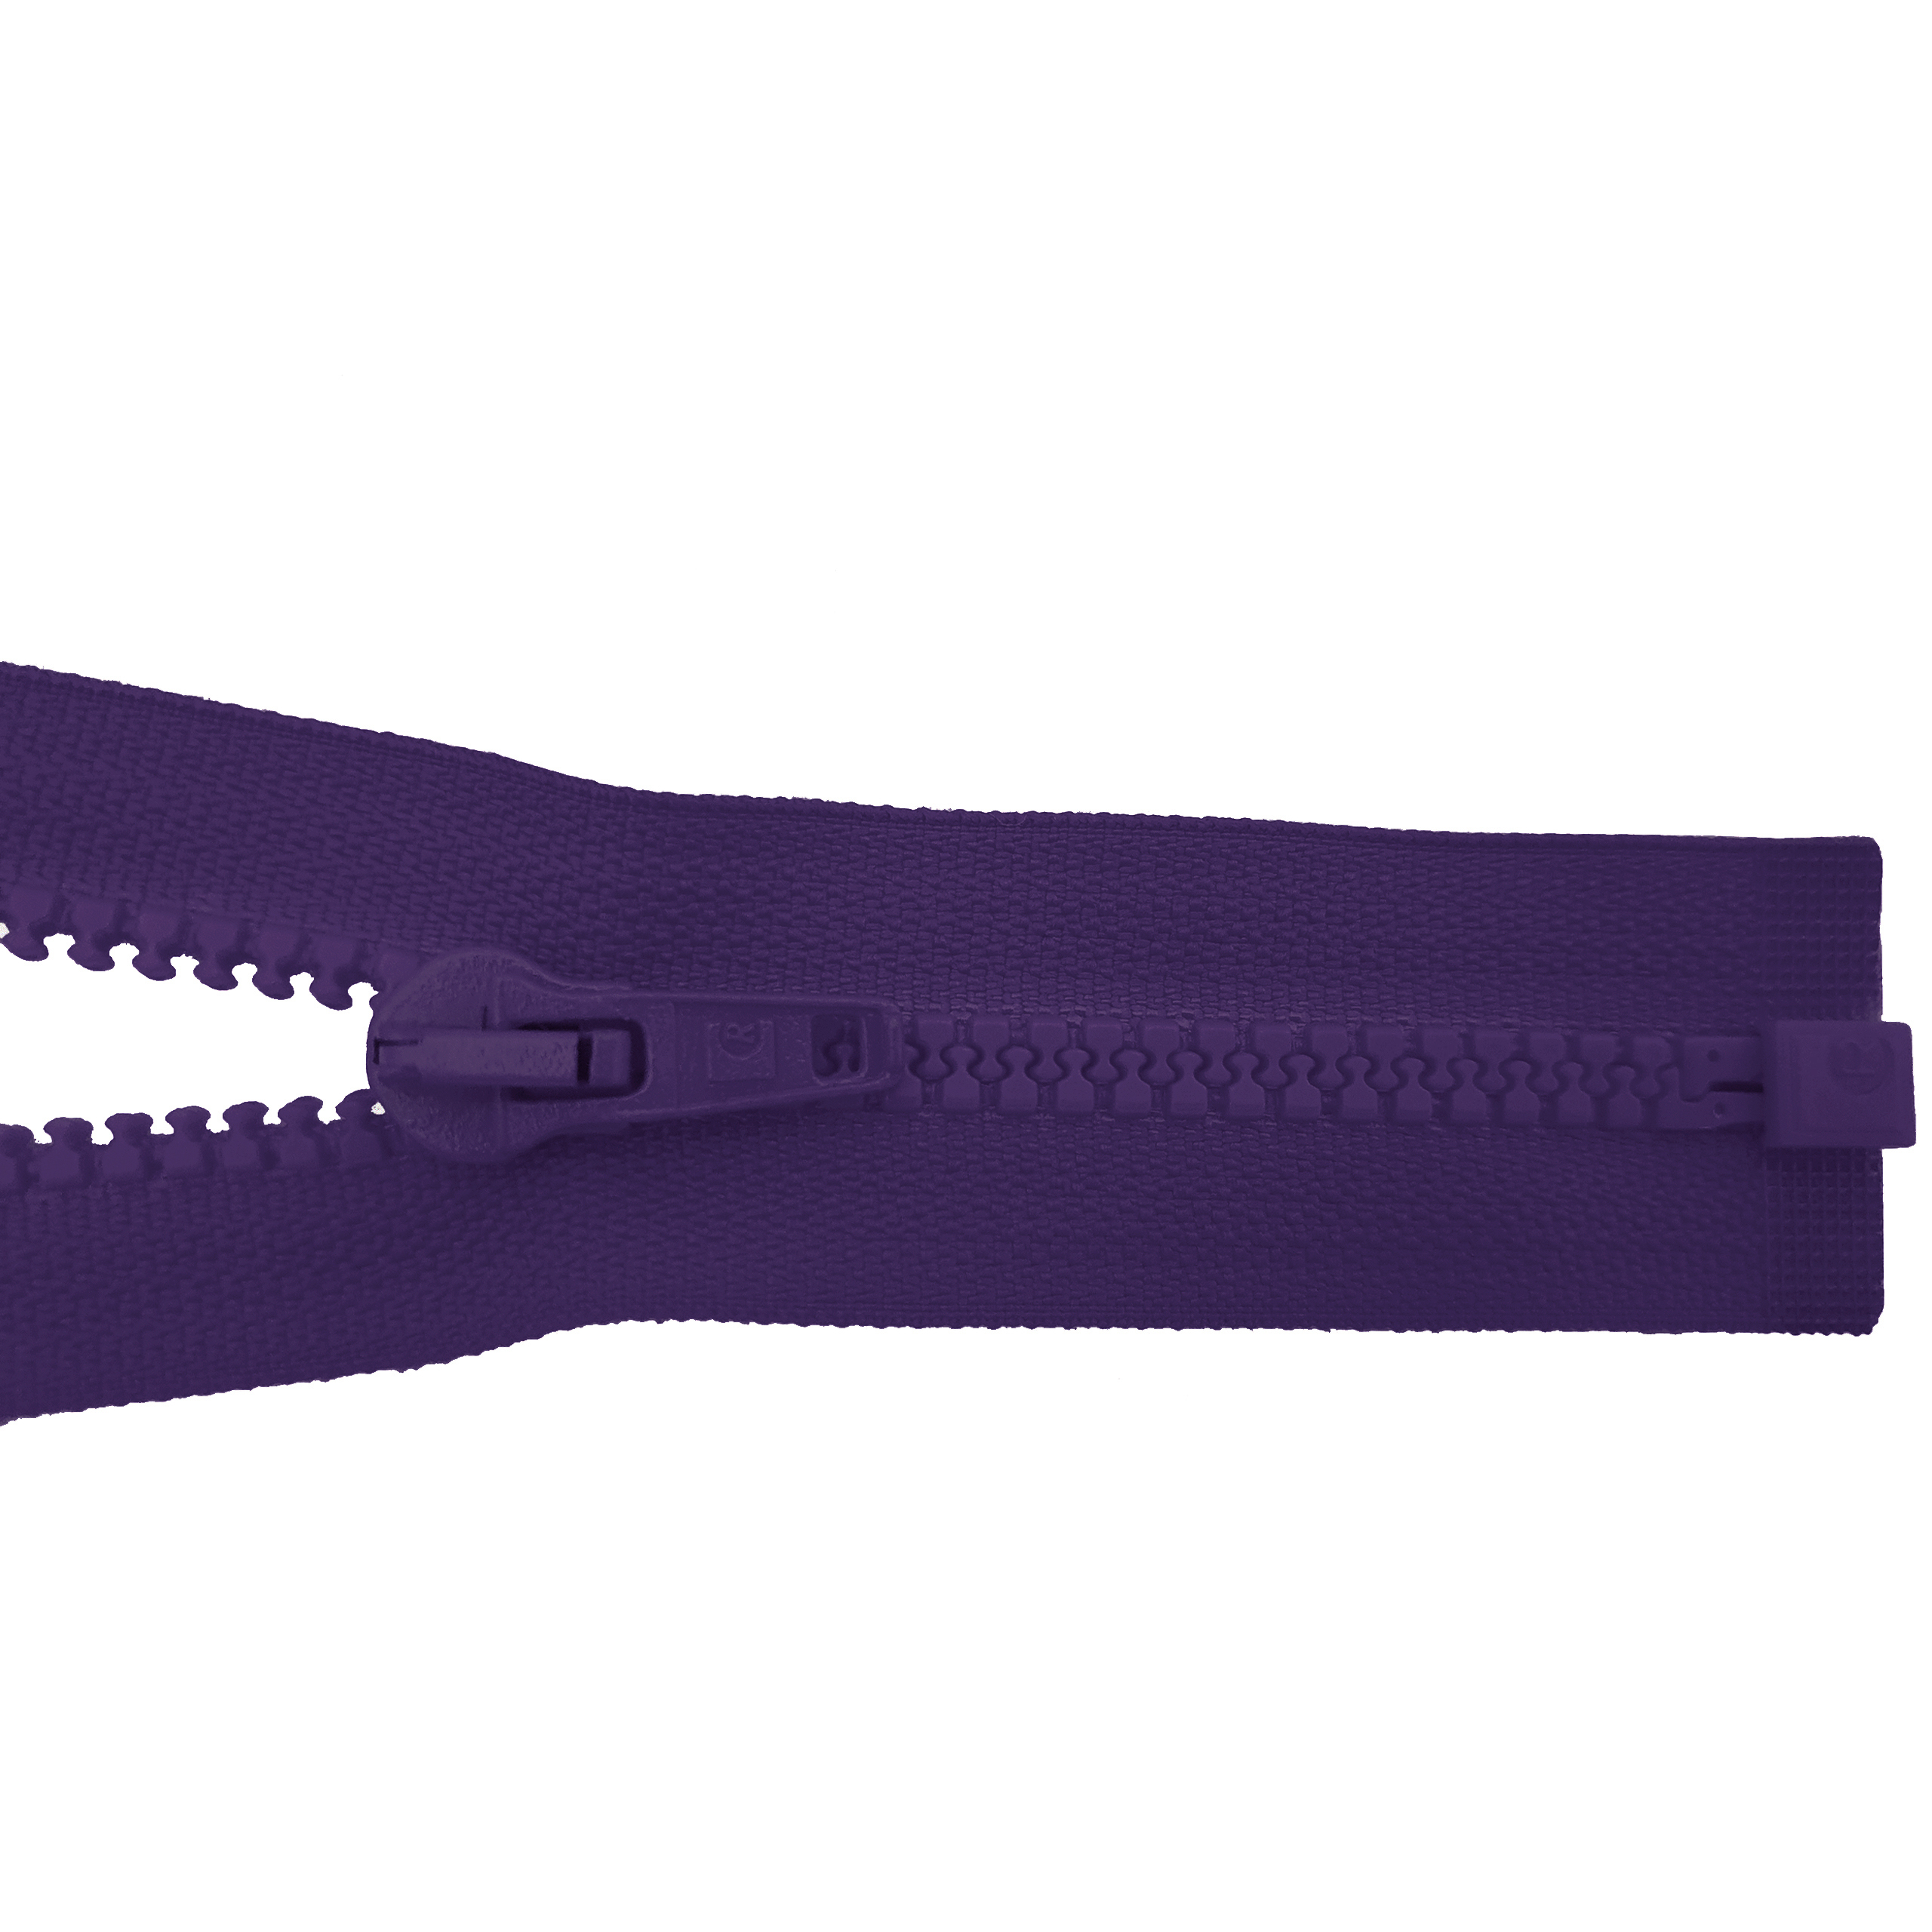 zipper 80cm,divisible, molded plastic, wide, purple